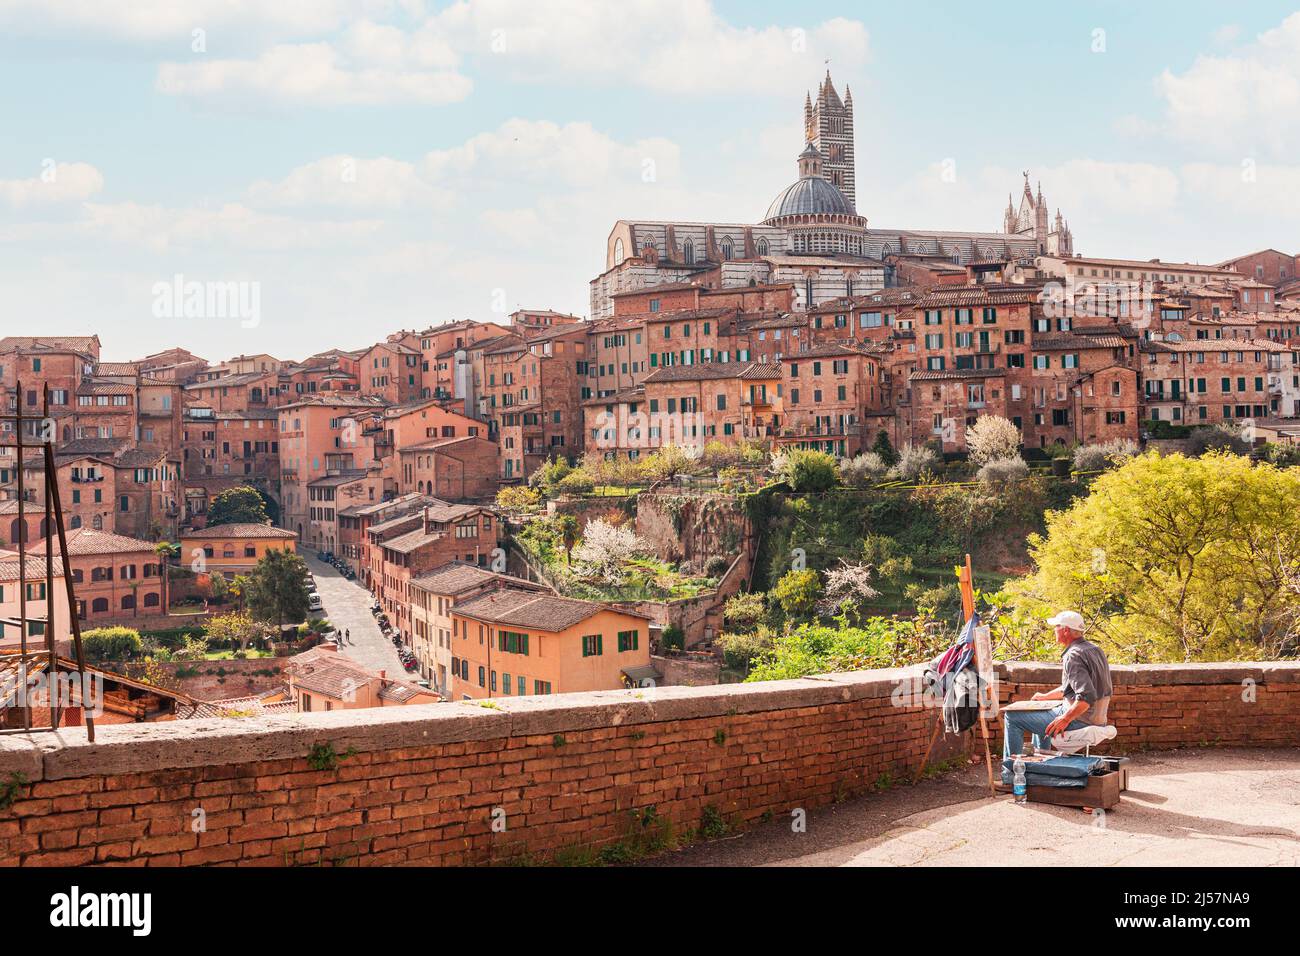 Vista panoramica della città di Siena e della cattedrale in una giornata di sole. Un pittore dipinge una vista di Siena in aria. Foto Stock